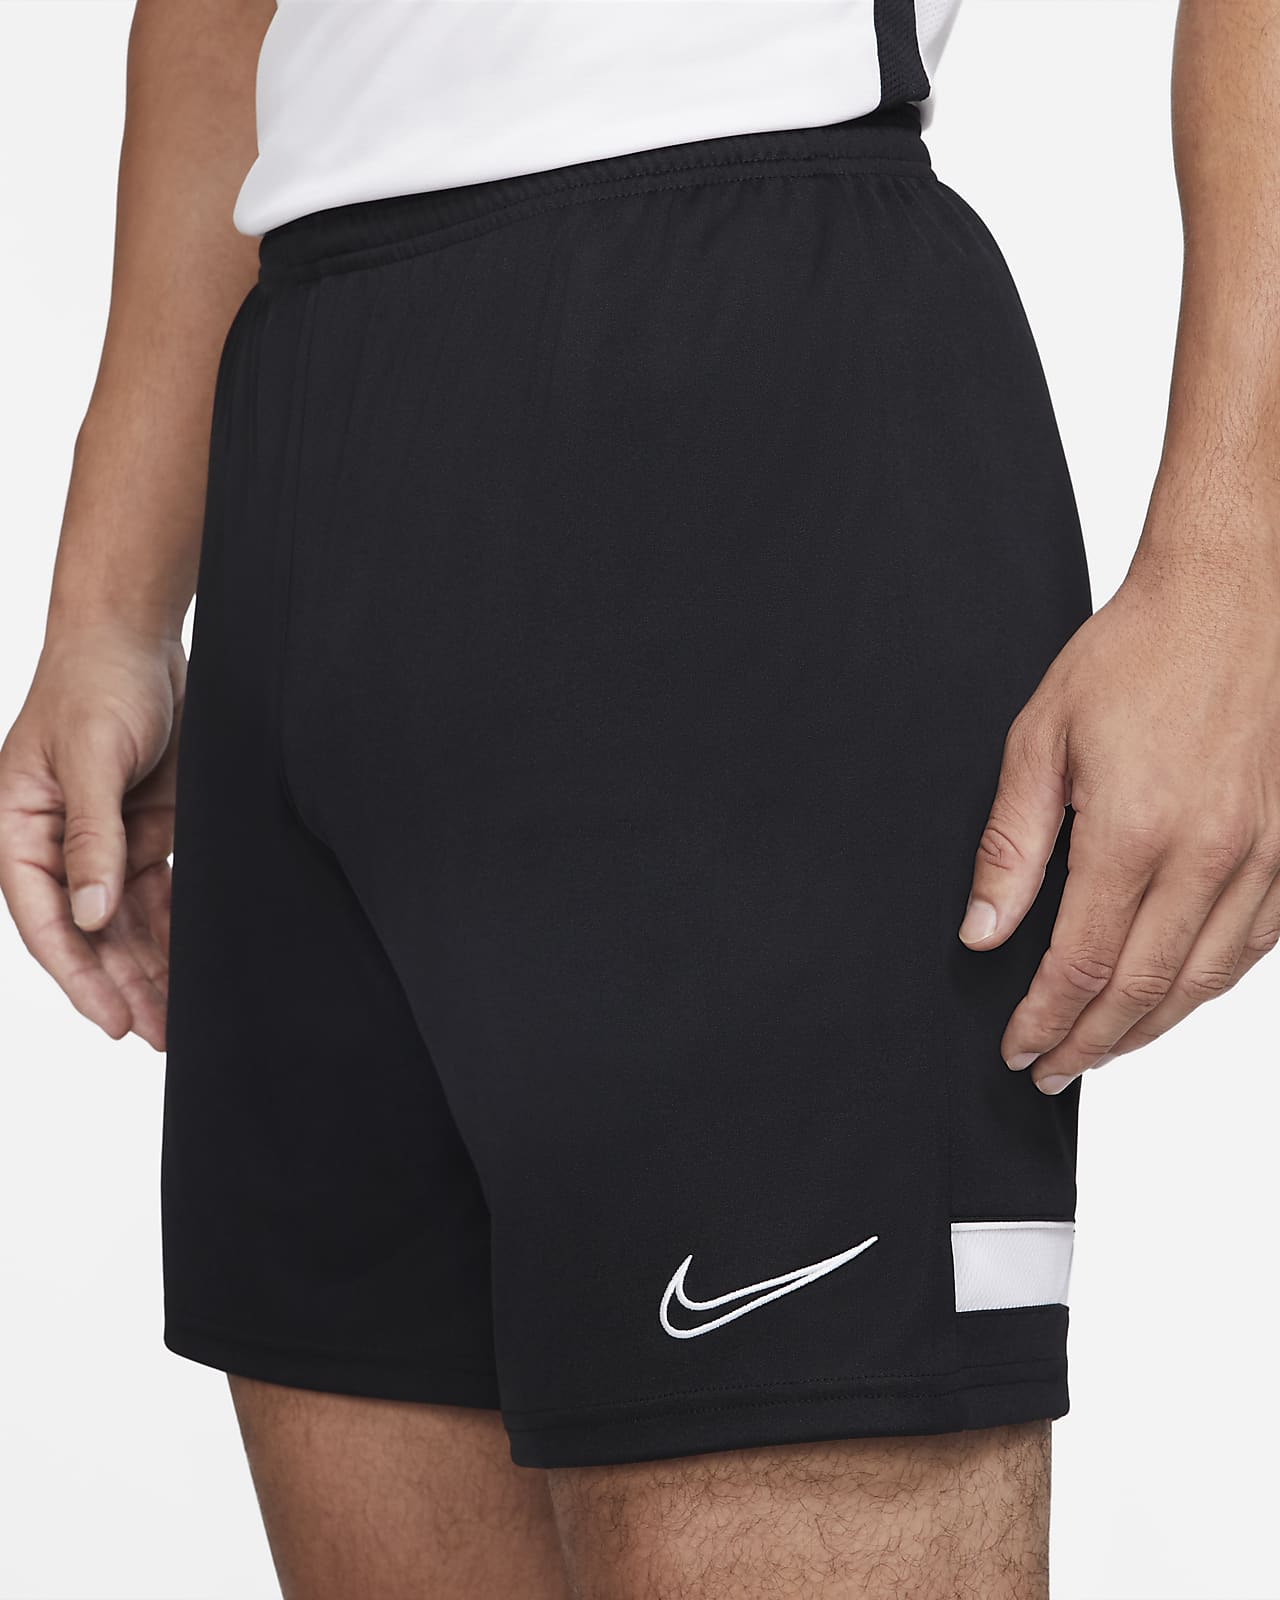 Men's Knit Soccer Shorts. Nike.com